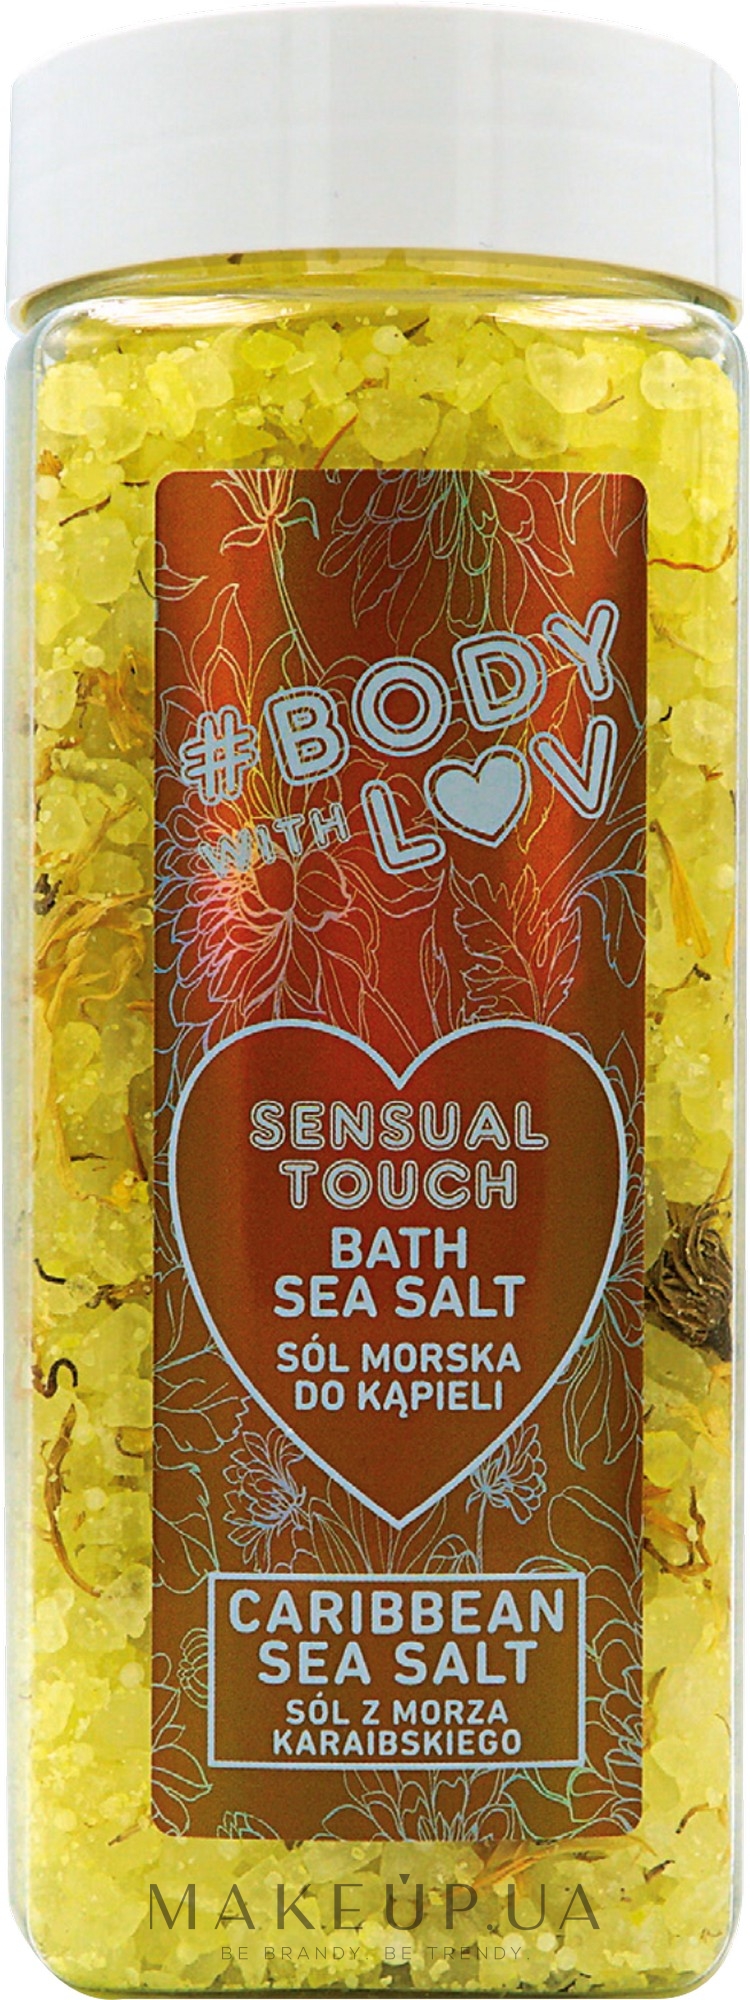 Сіль для ванн - New Anna Cosmetics Body With Luv Sea Salt For Bath Sensual Touch — фото 500g